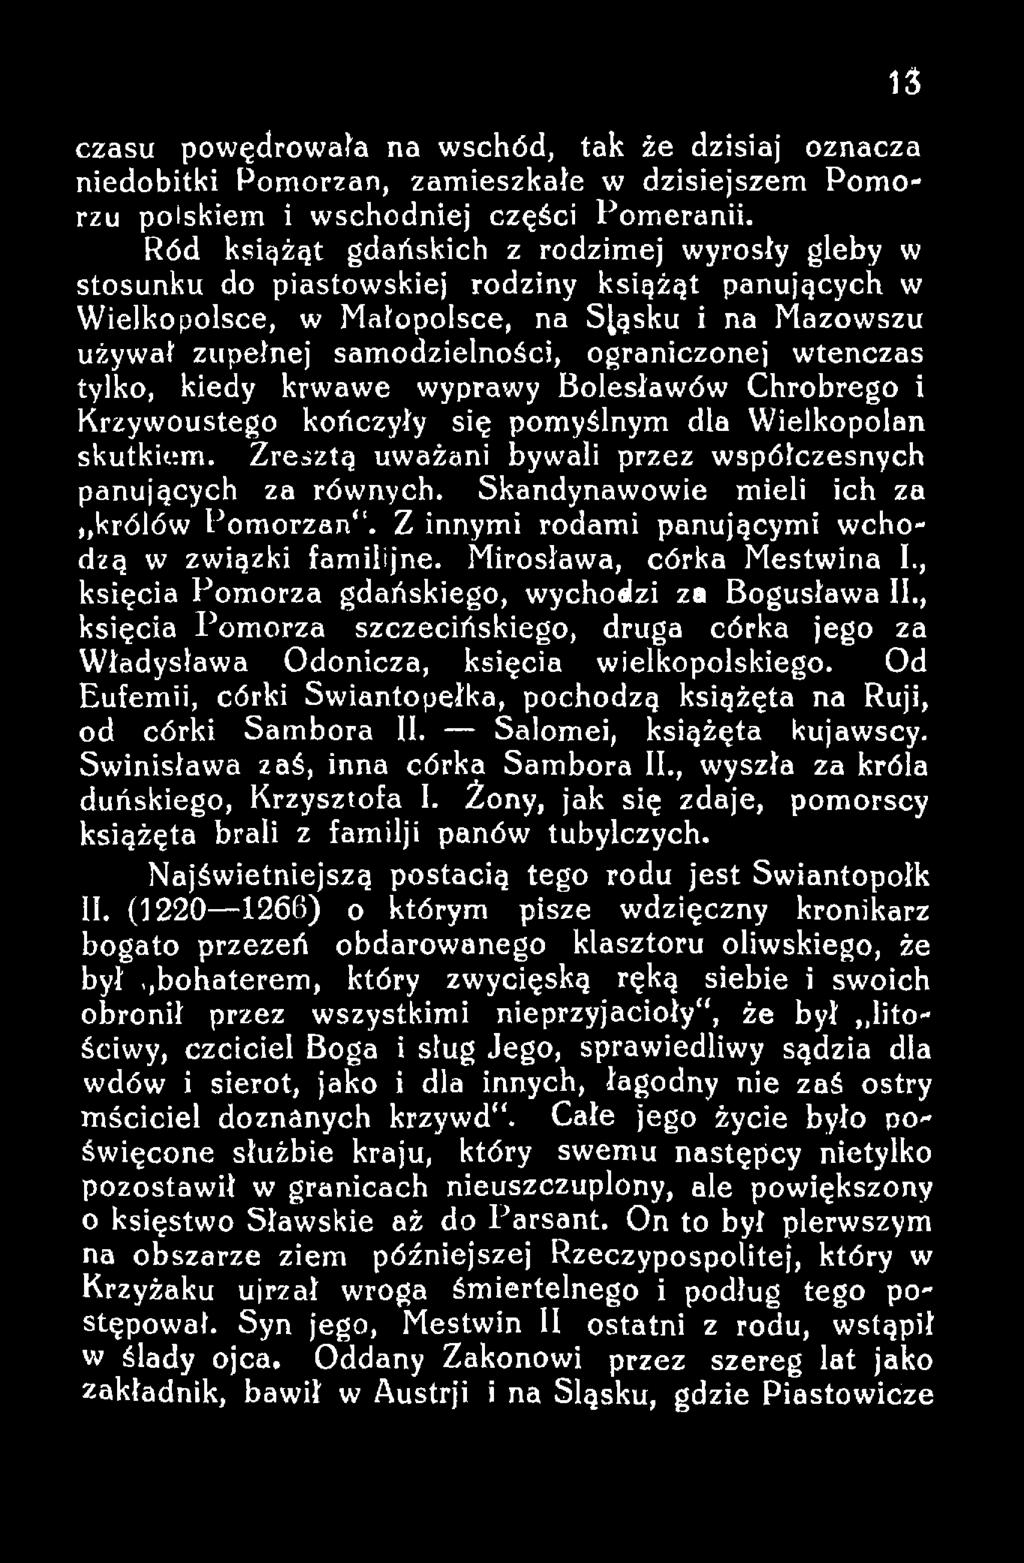 , księcia Pomorza szczecińskiego, druga córka jego za Władysława Odonicza, księcia wielkopolskiego. Od Eufemii, córki Swiantopełka, pochodzą książęta na Ruji, od córki Sambora II.